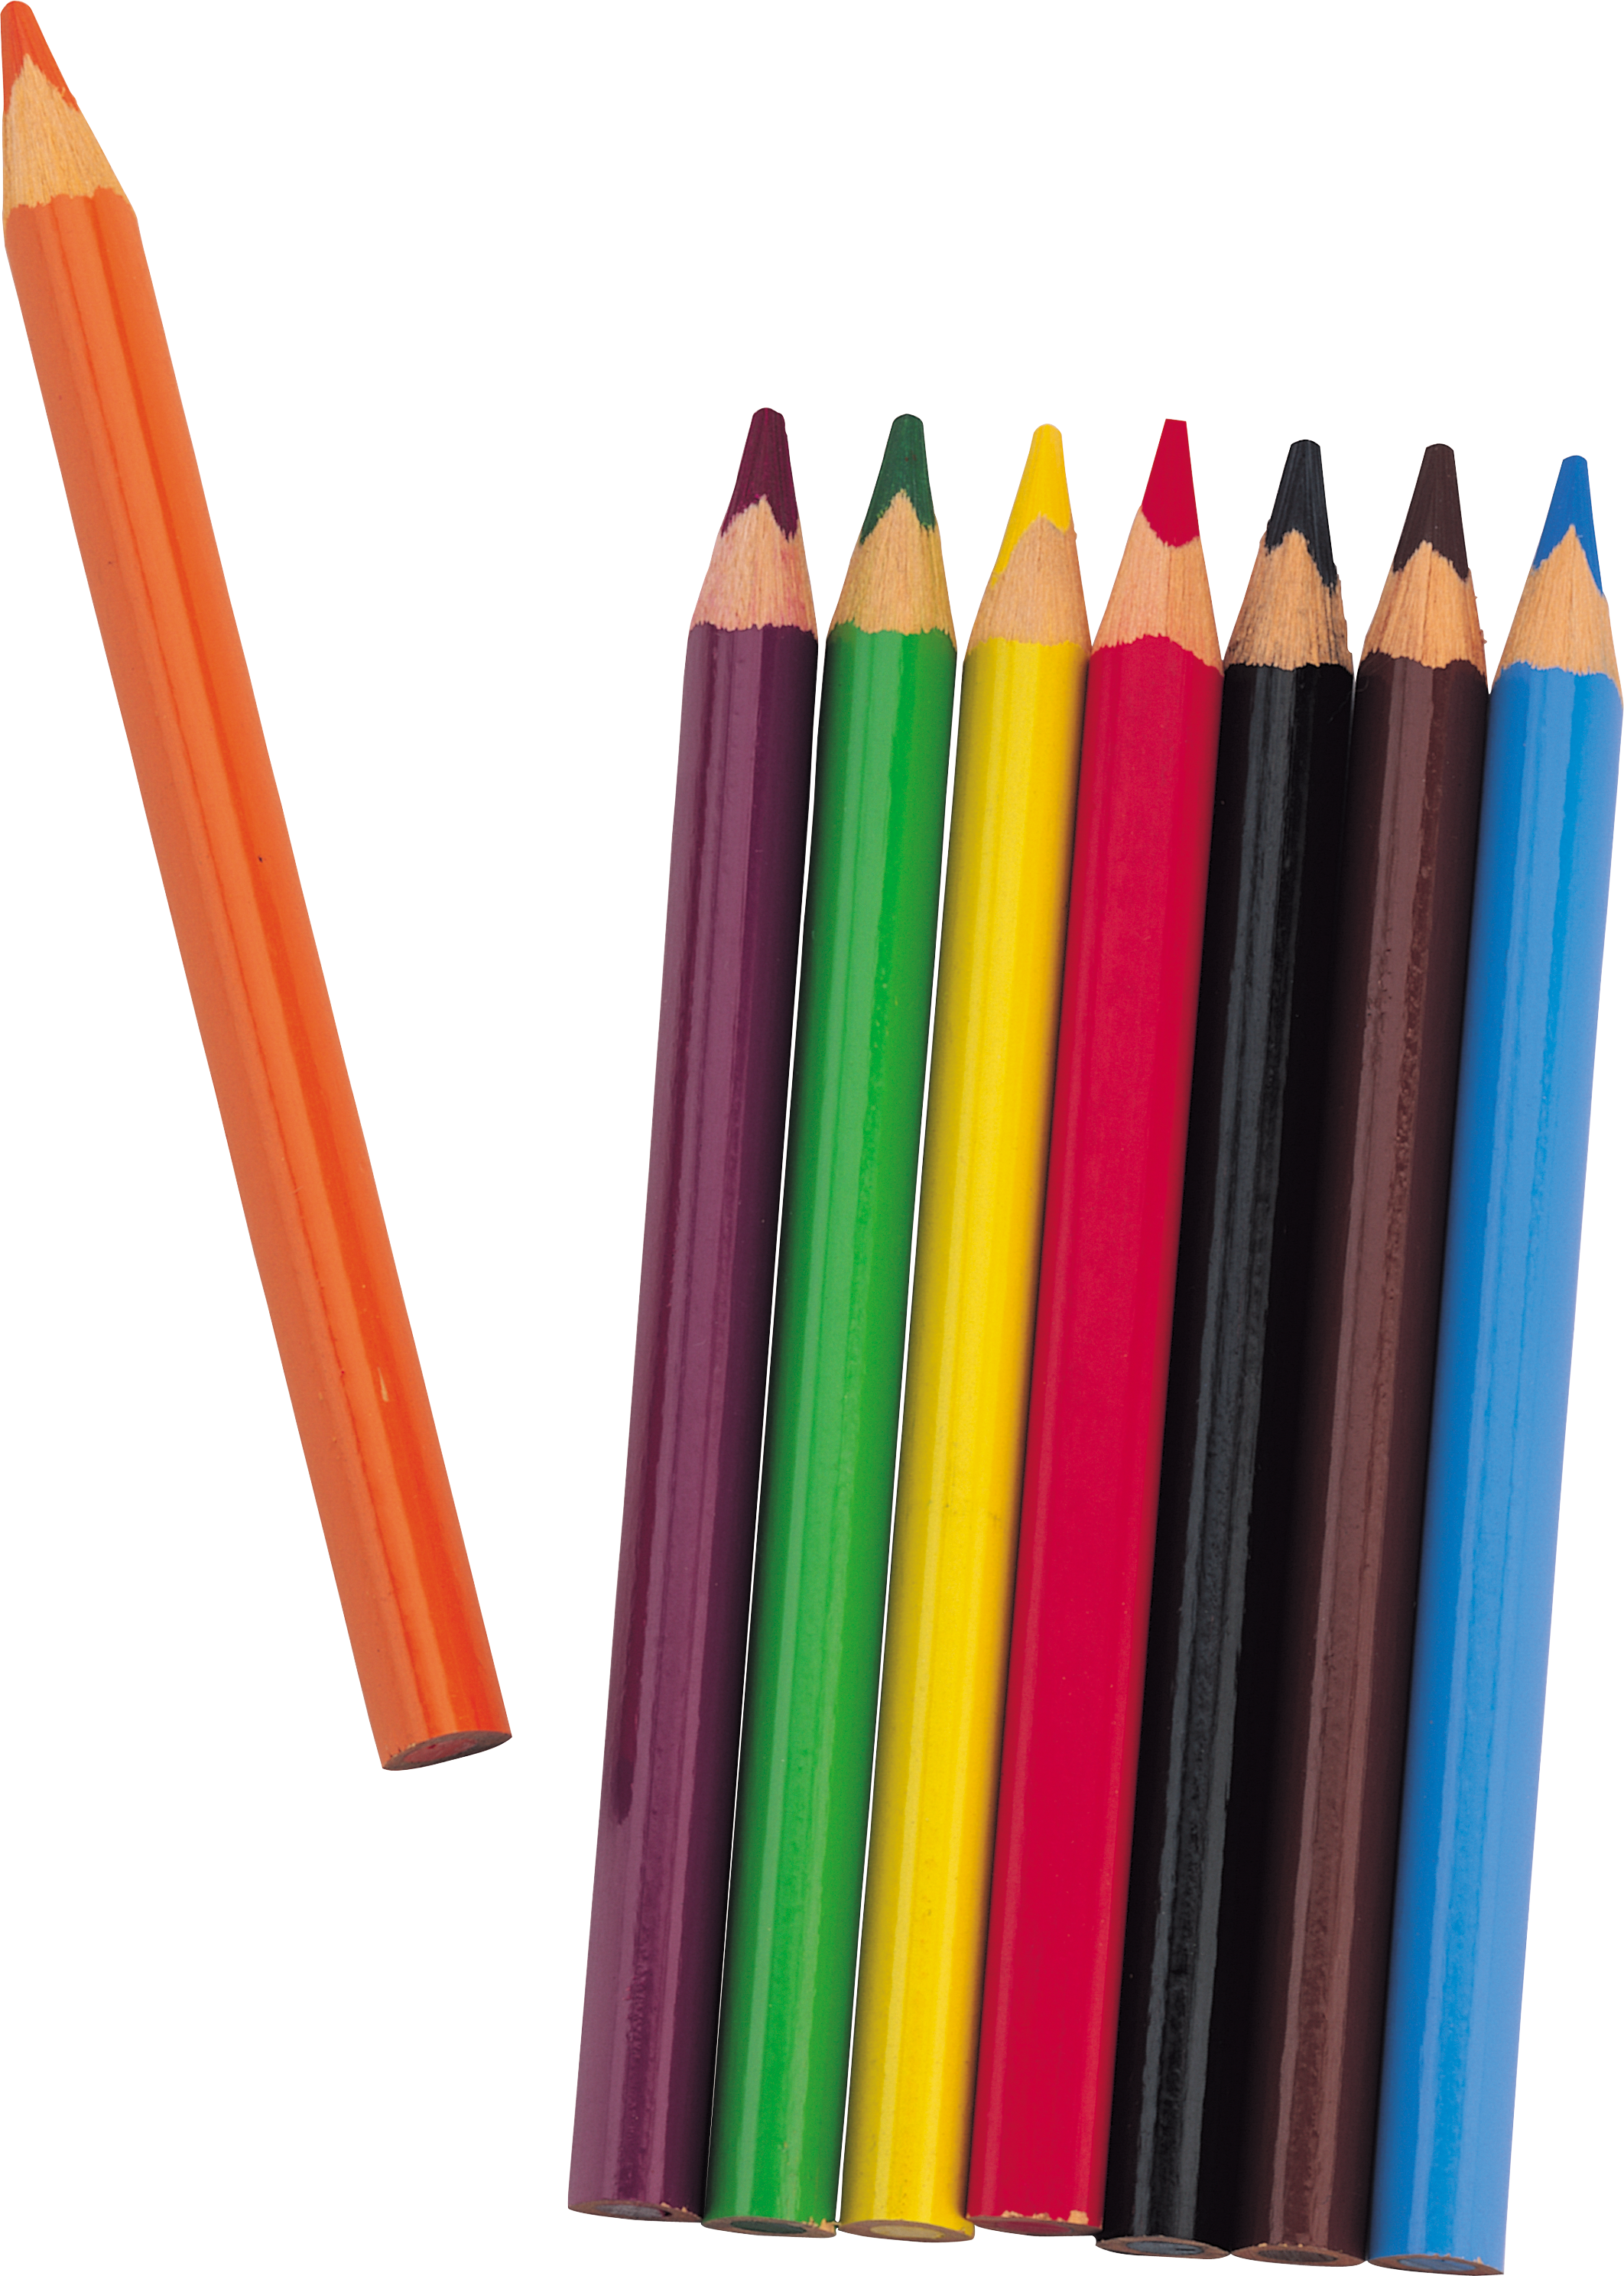 文具铅笔彩色铅笔绘画工具装饰元素